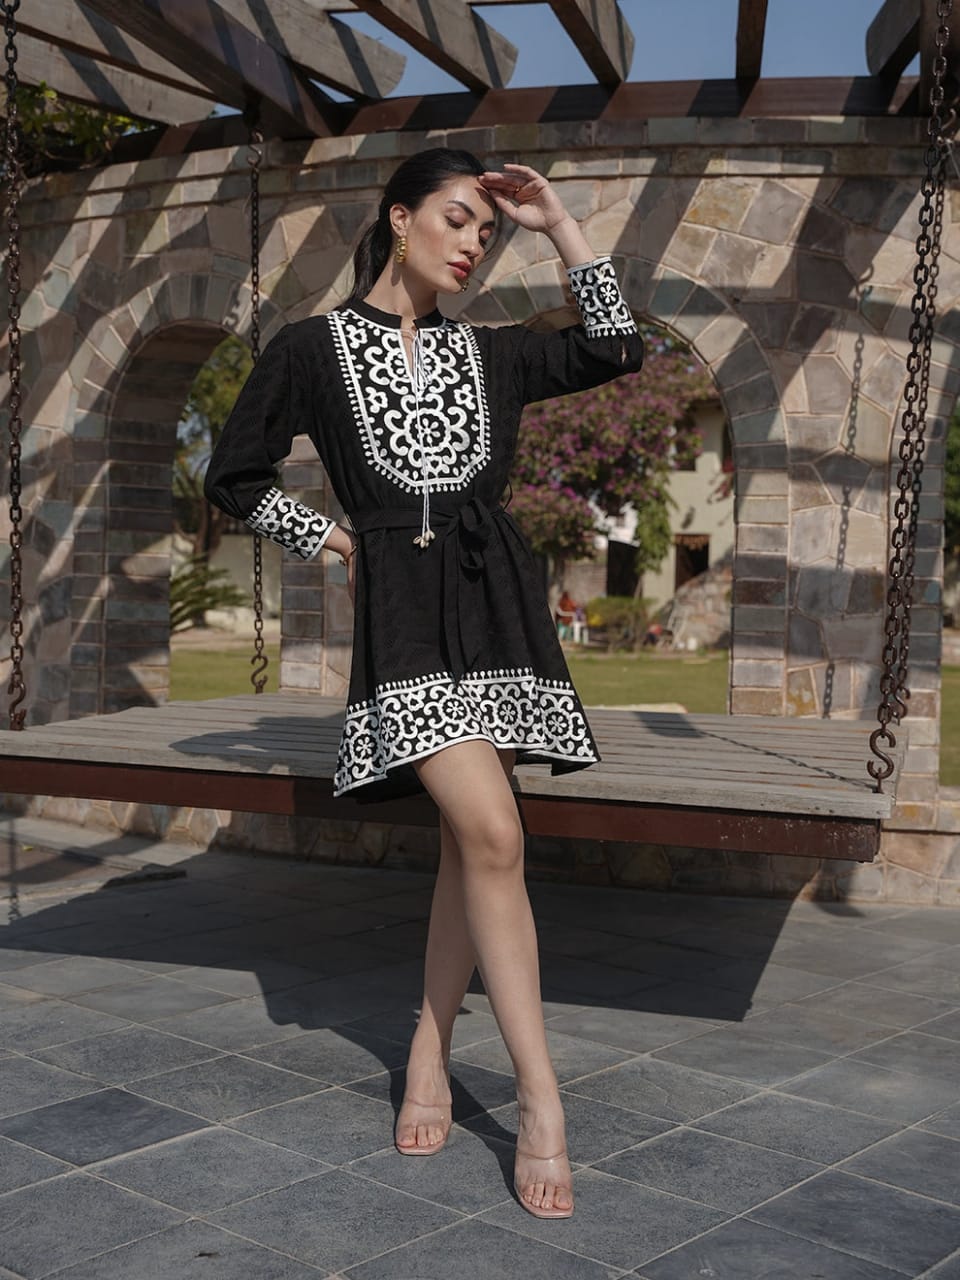 Elegant Black Dress with Apron Design Neckline and Hem Border